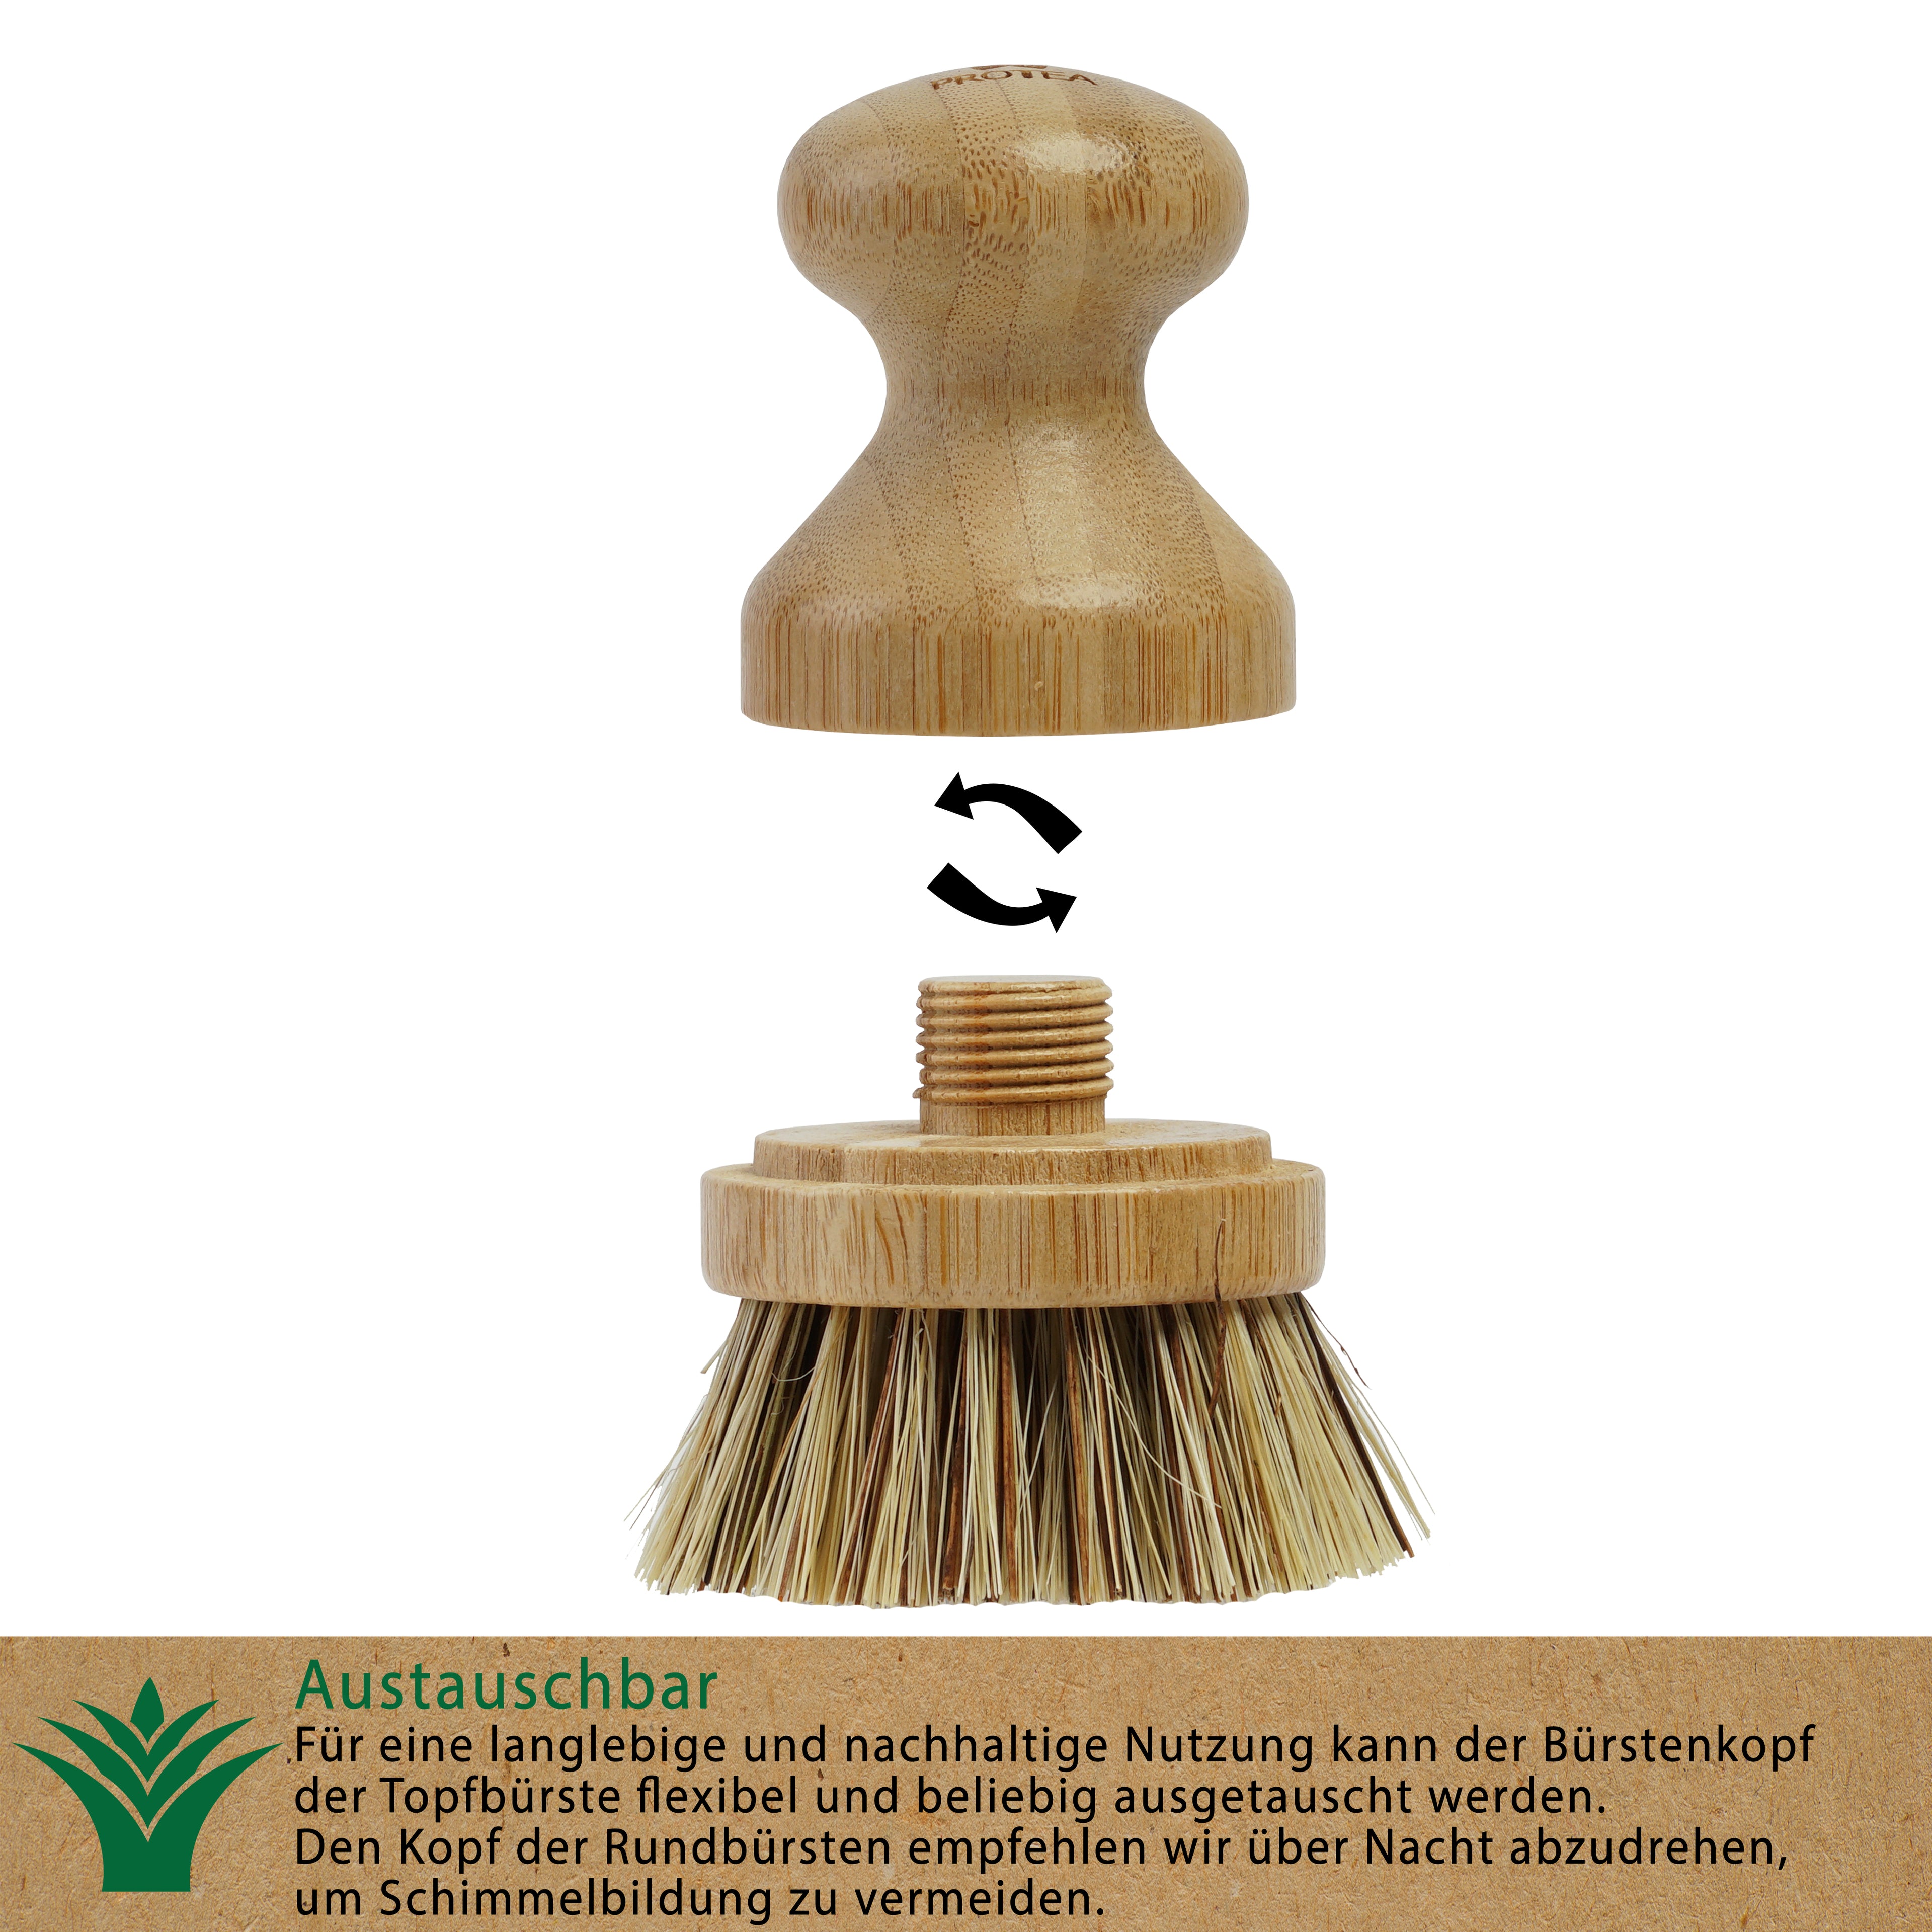 Unsere Topfbürste ist besonders langlebig und nachhaltig, da der Bürstenkopf aus Holz einfach ausgewechselt werden kann.